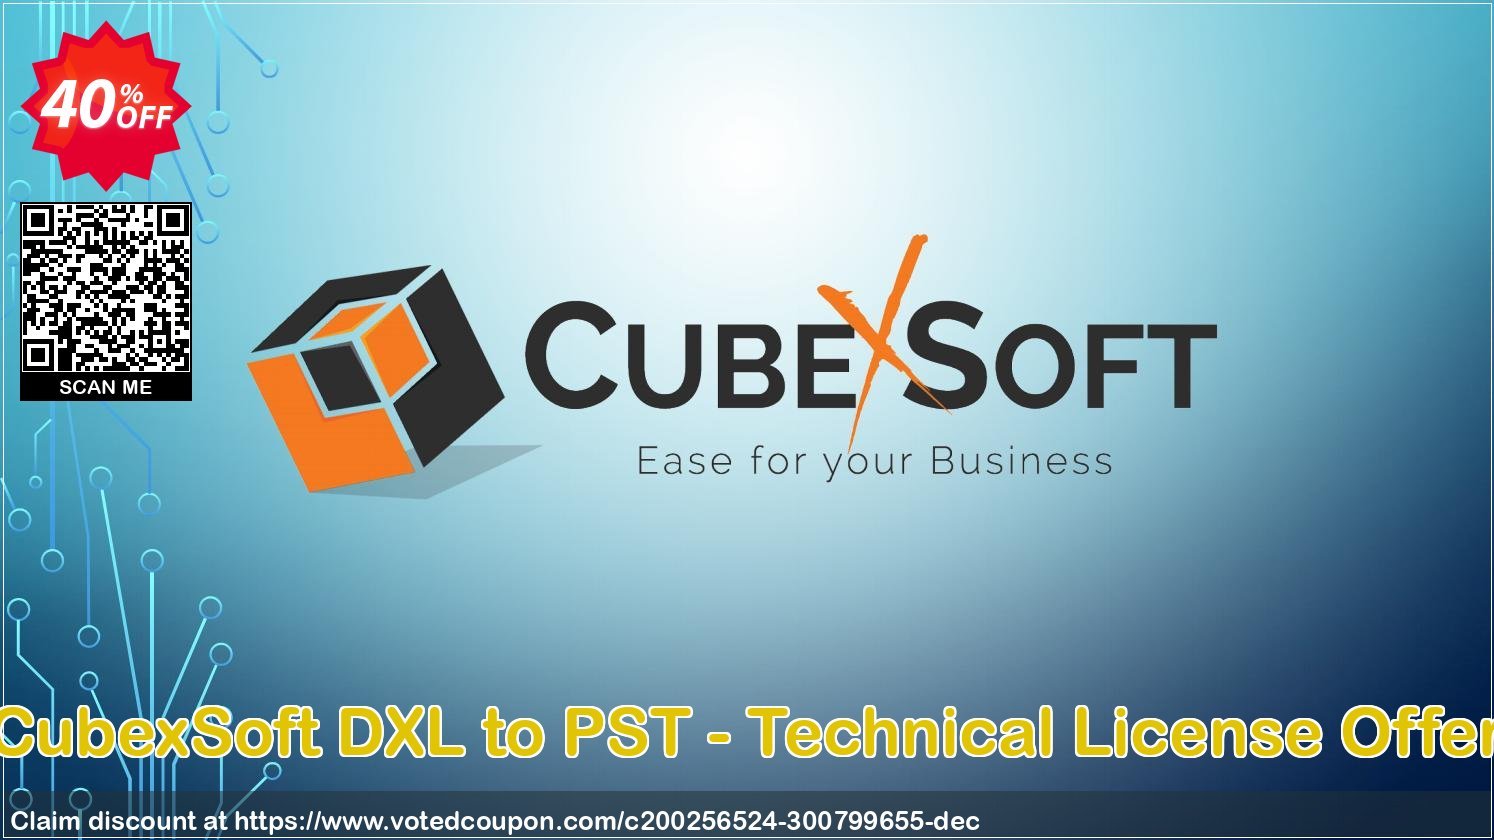 CubexSoft DXL to PST - Technical Plan Offer Coupon, discount Coupon code CubexSoft DXL to PST - Technical License Offer. Promotion: CubexSoft DXL to PST - Technical License Offer offer from CubexSoft Tools Pvt. Ltd.